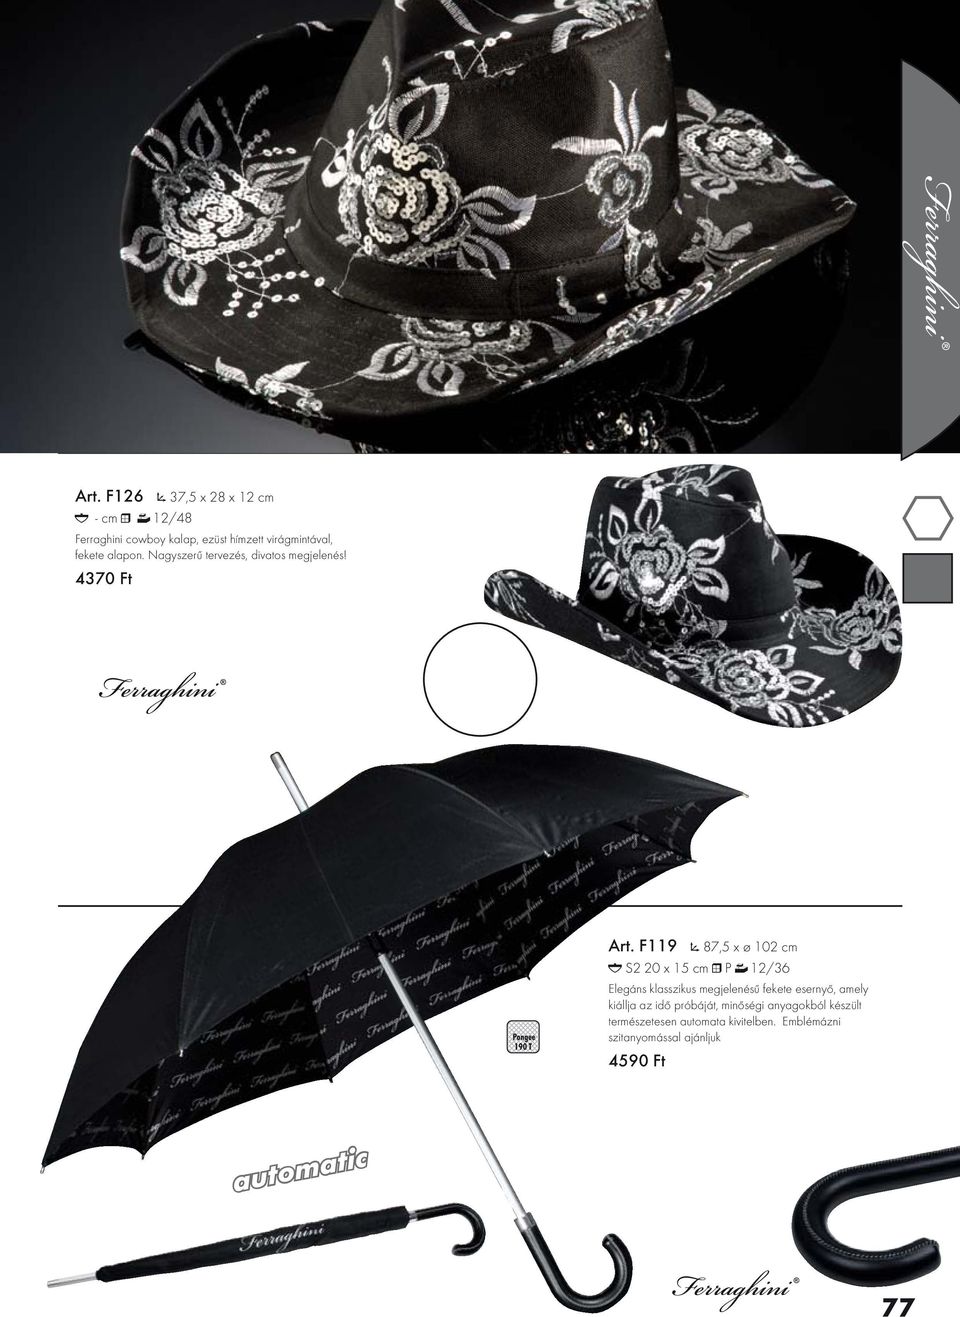 F119 87,5 x ø 102 cm S2 20 x 15 cm P 12/36 Elegáns klasszikus megjelenésű fekete esernyő, amely kiállja